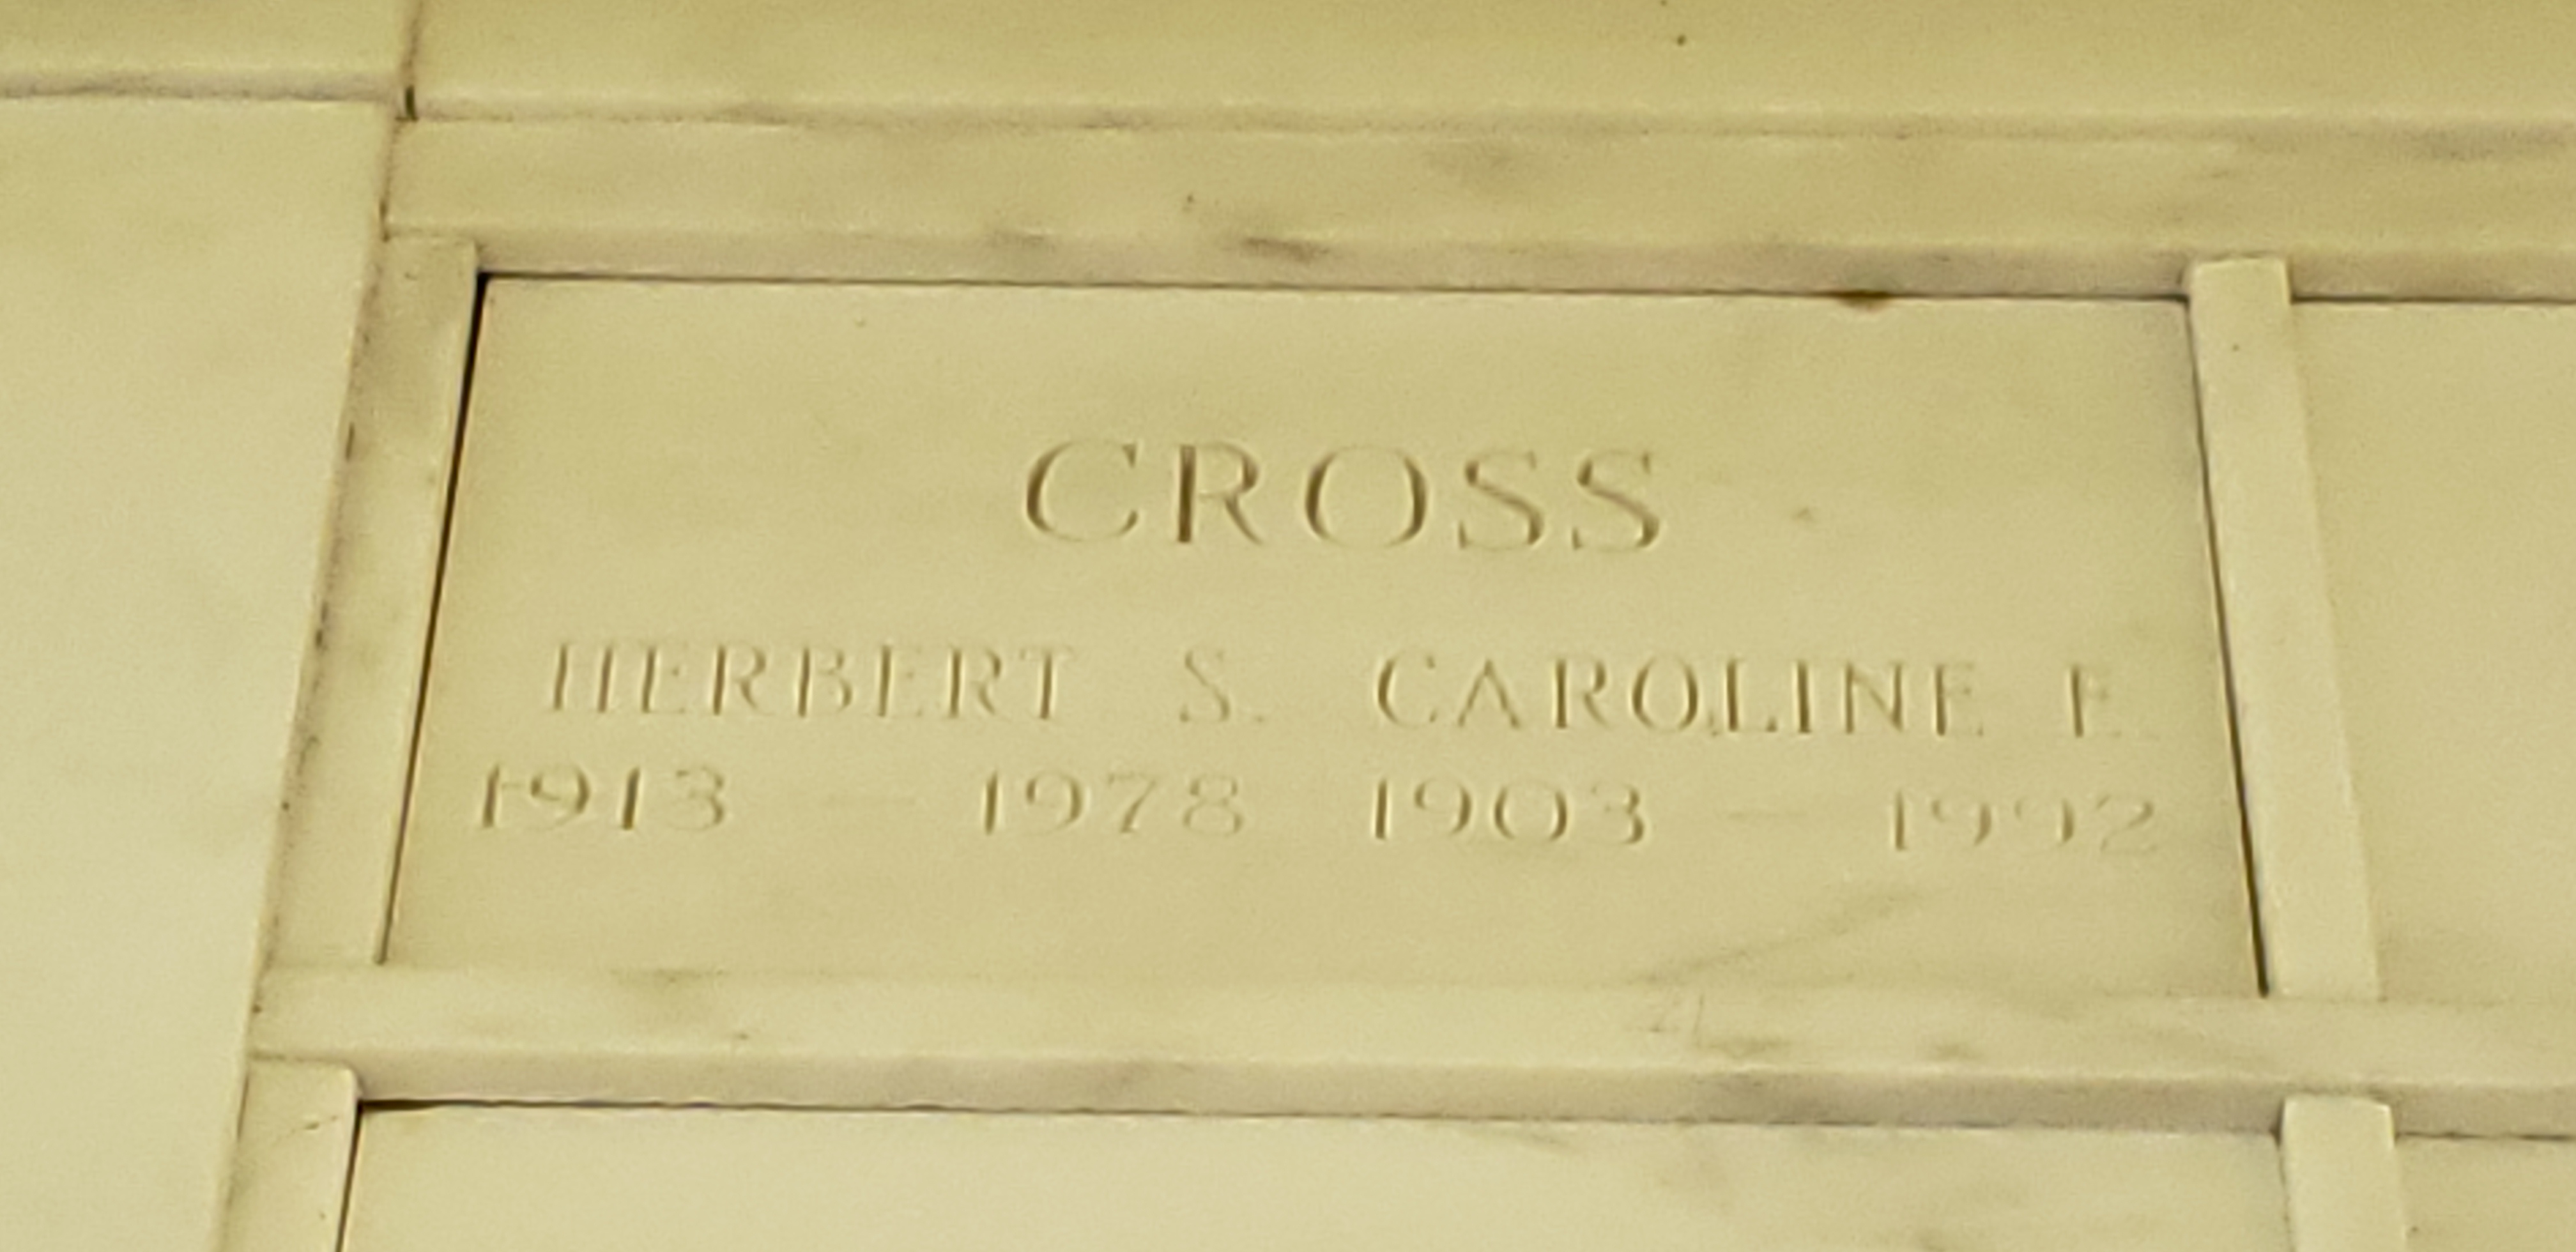 Caroline E Cross